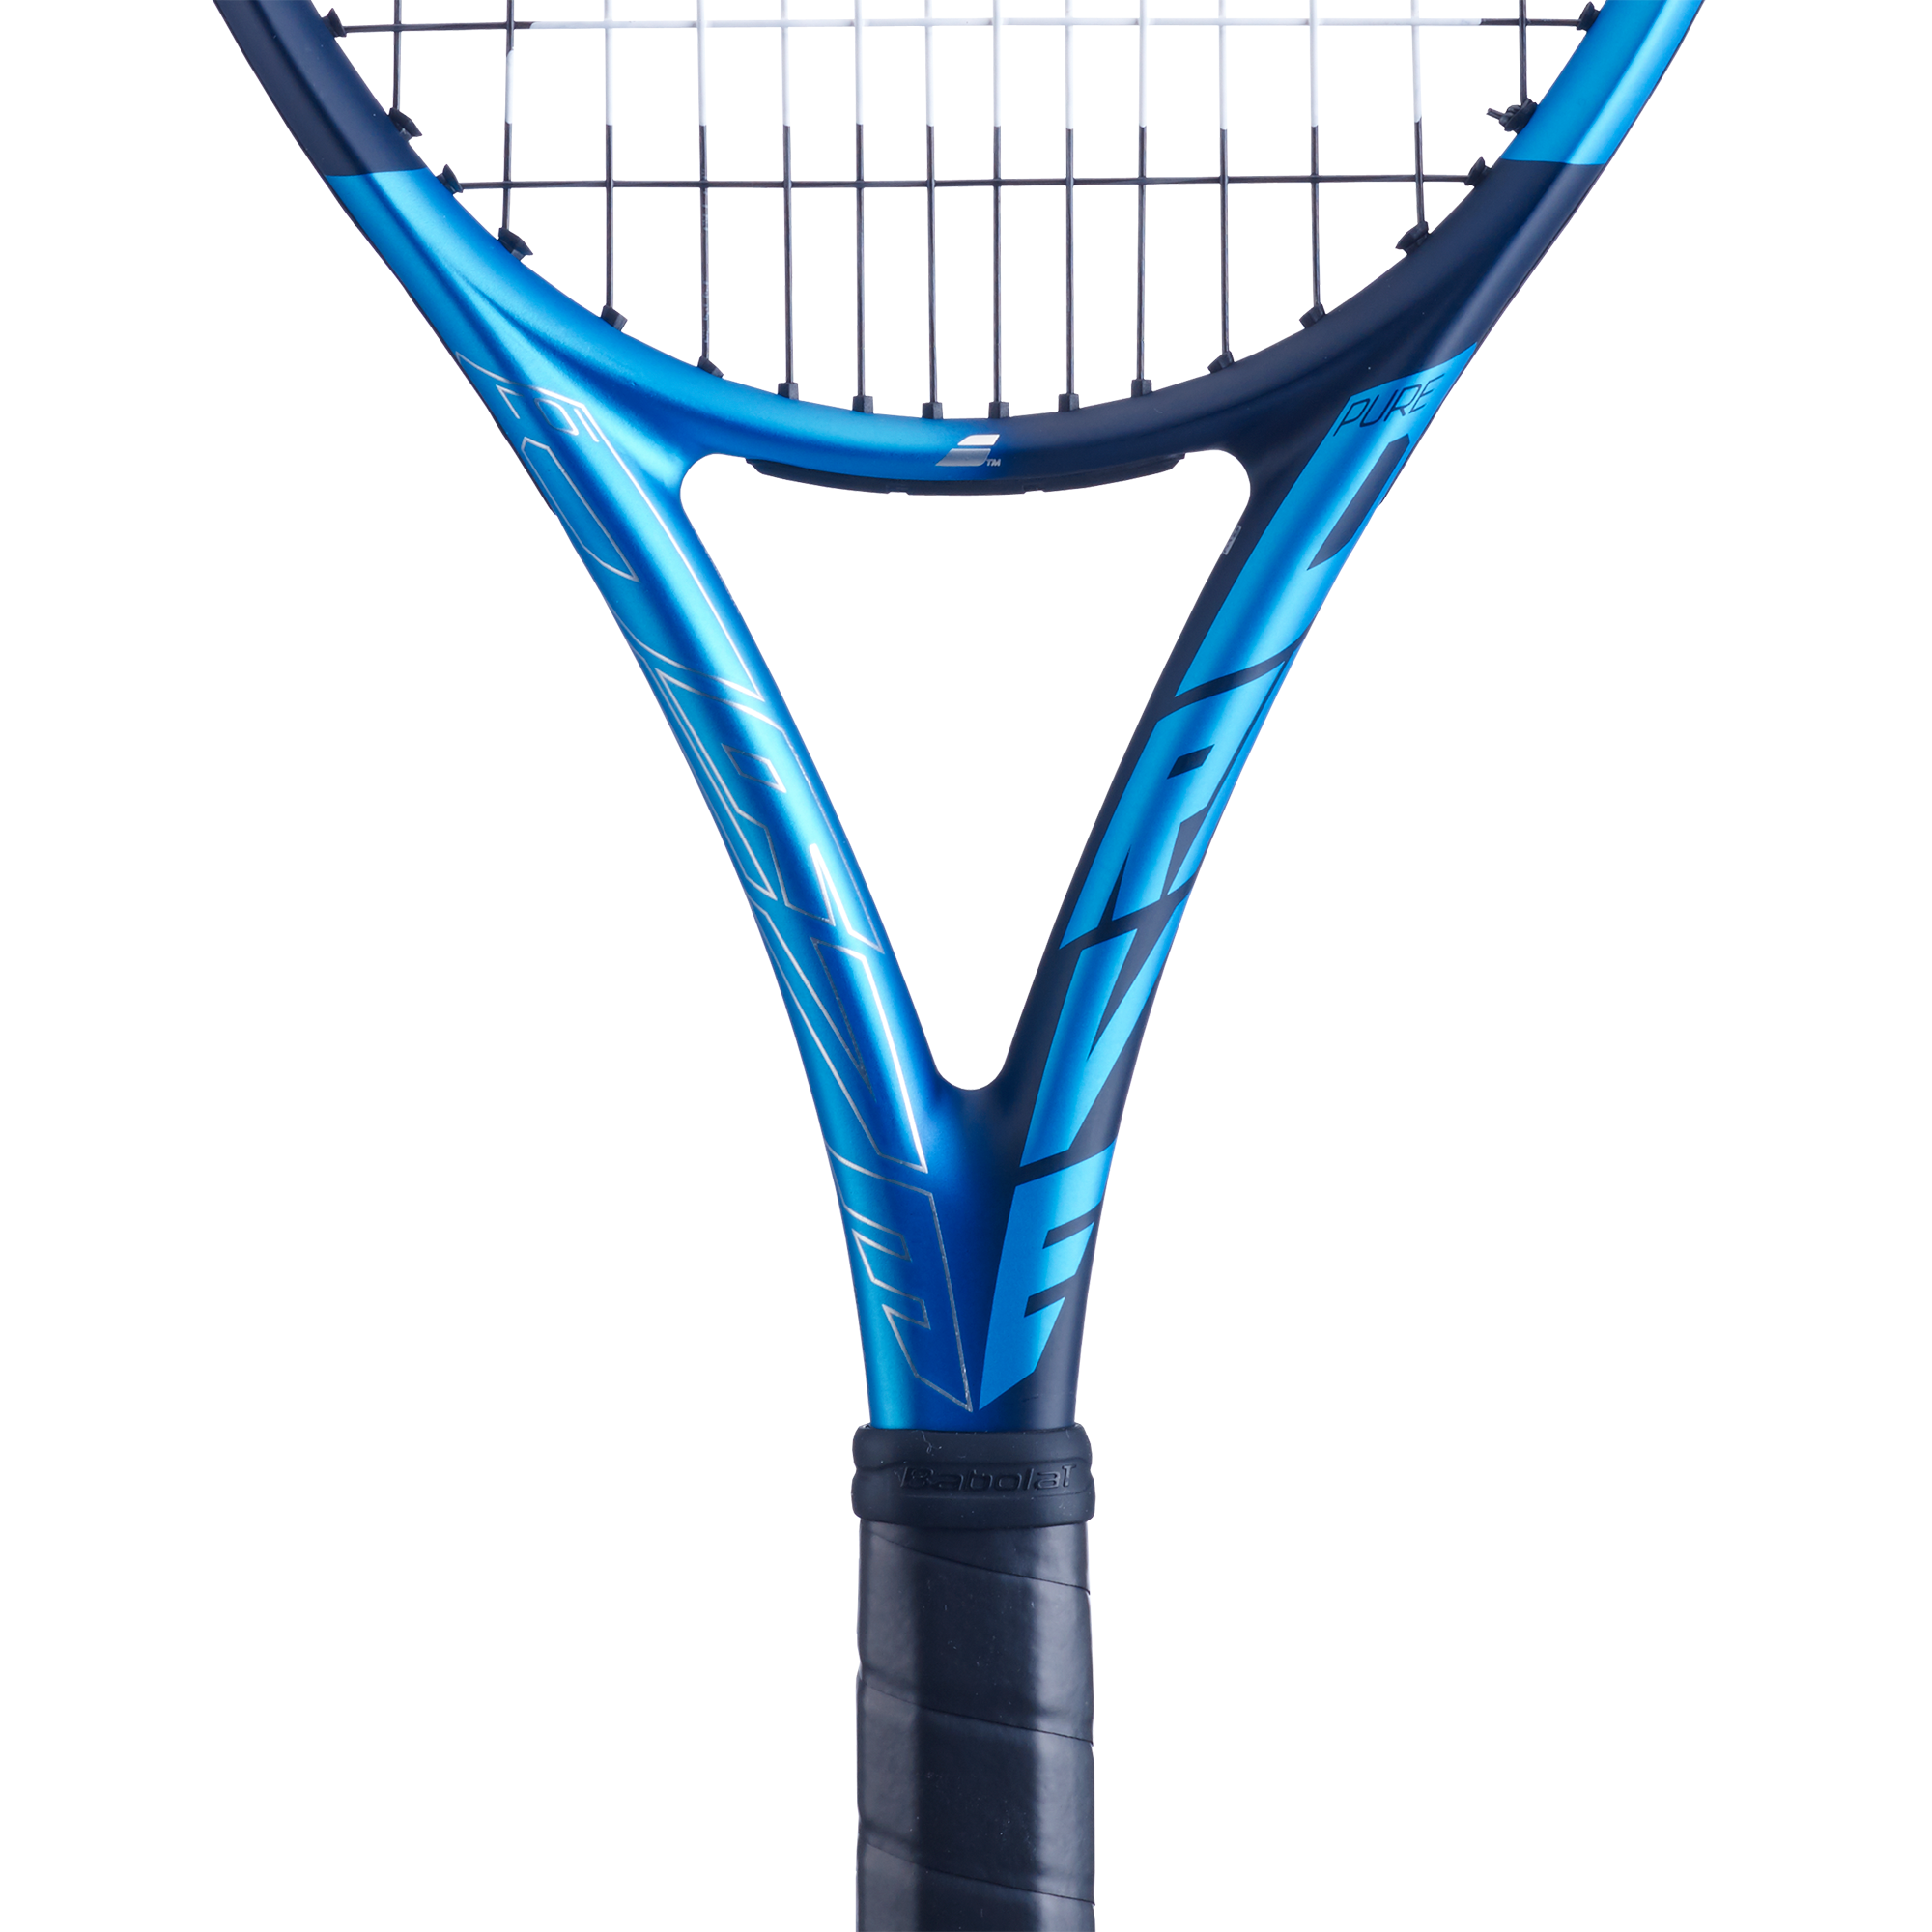 Pure Drive 107 2021 Tennis Racquet